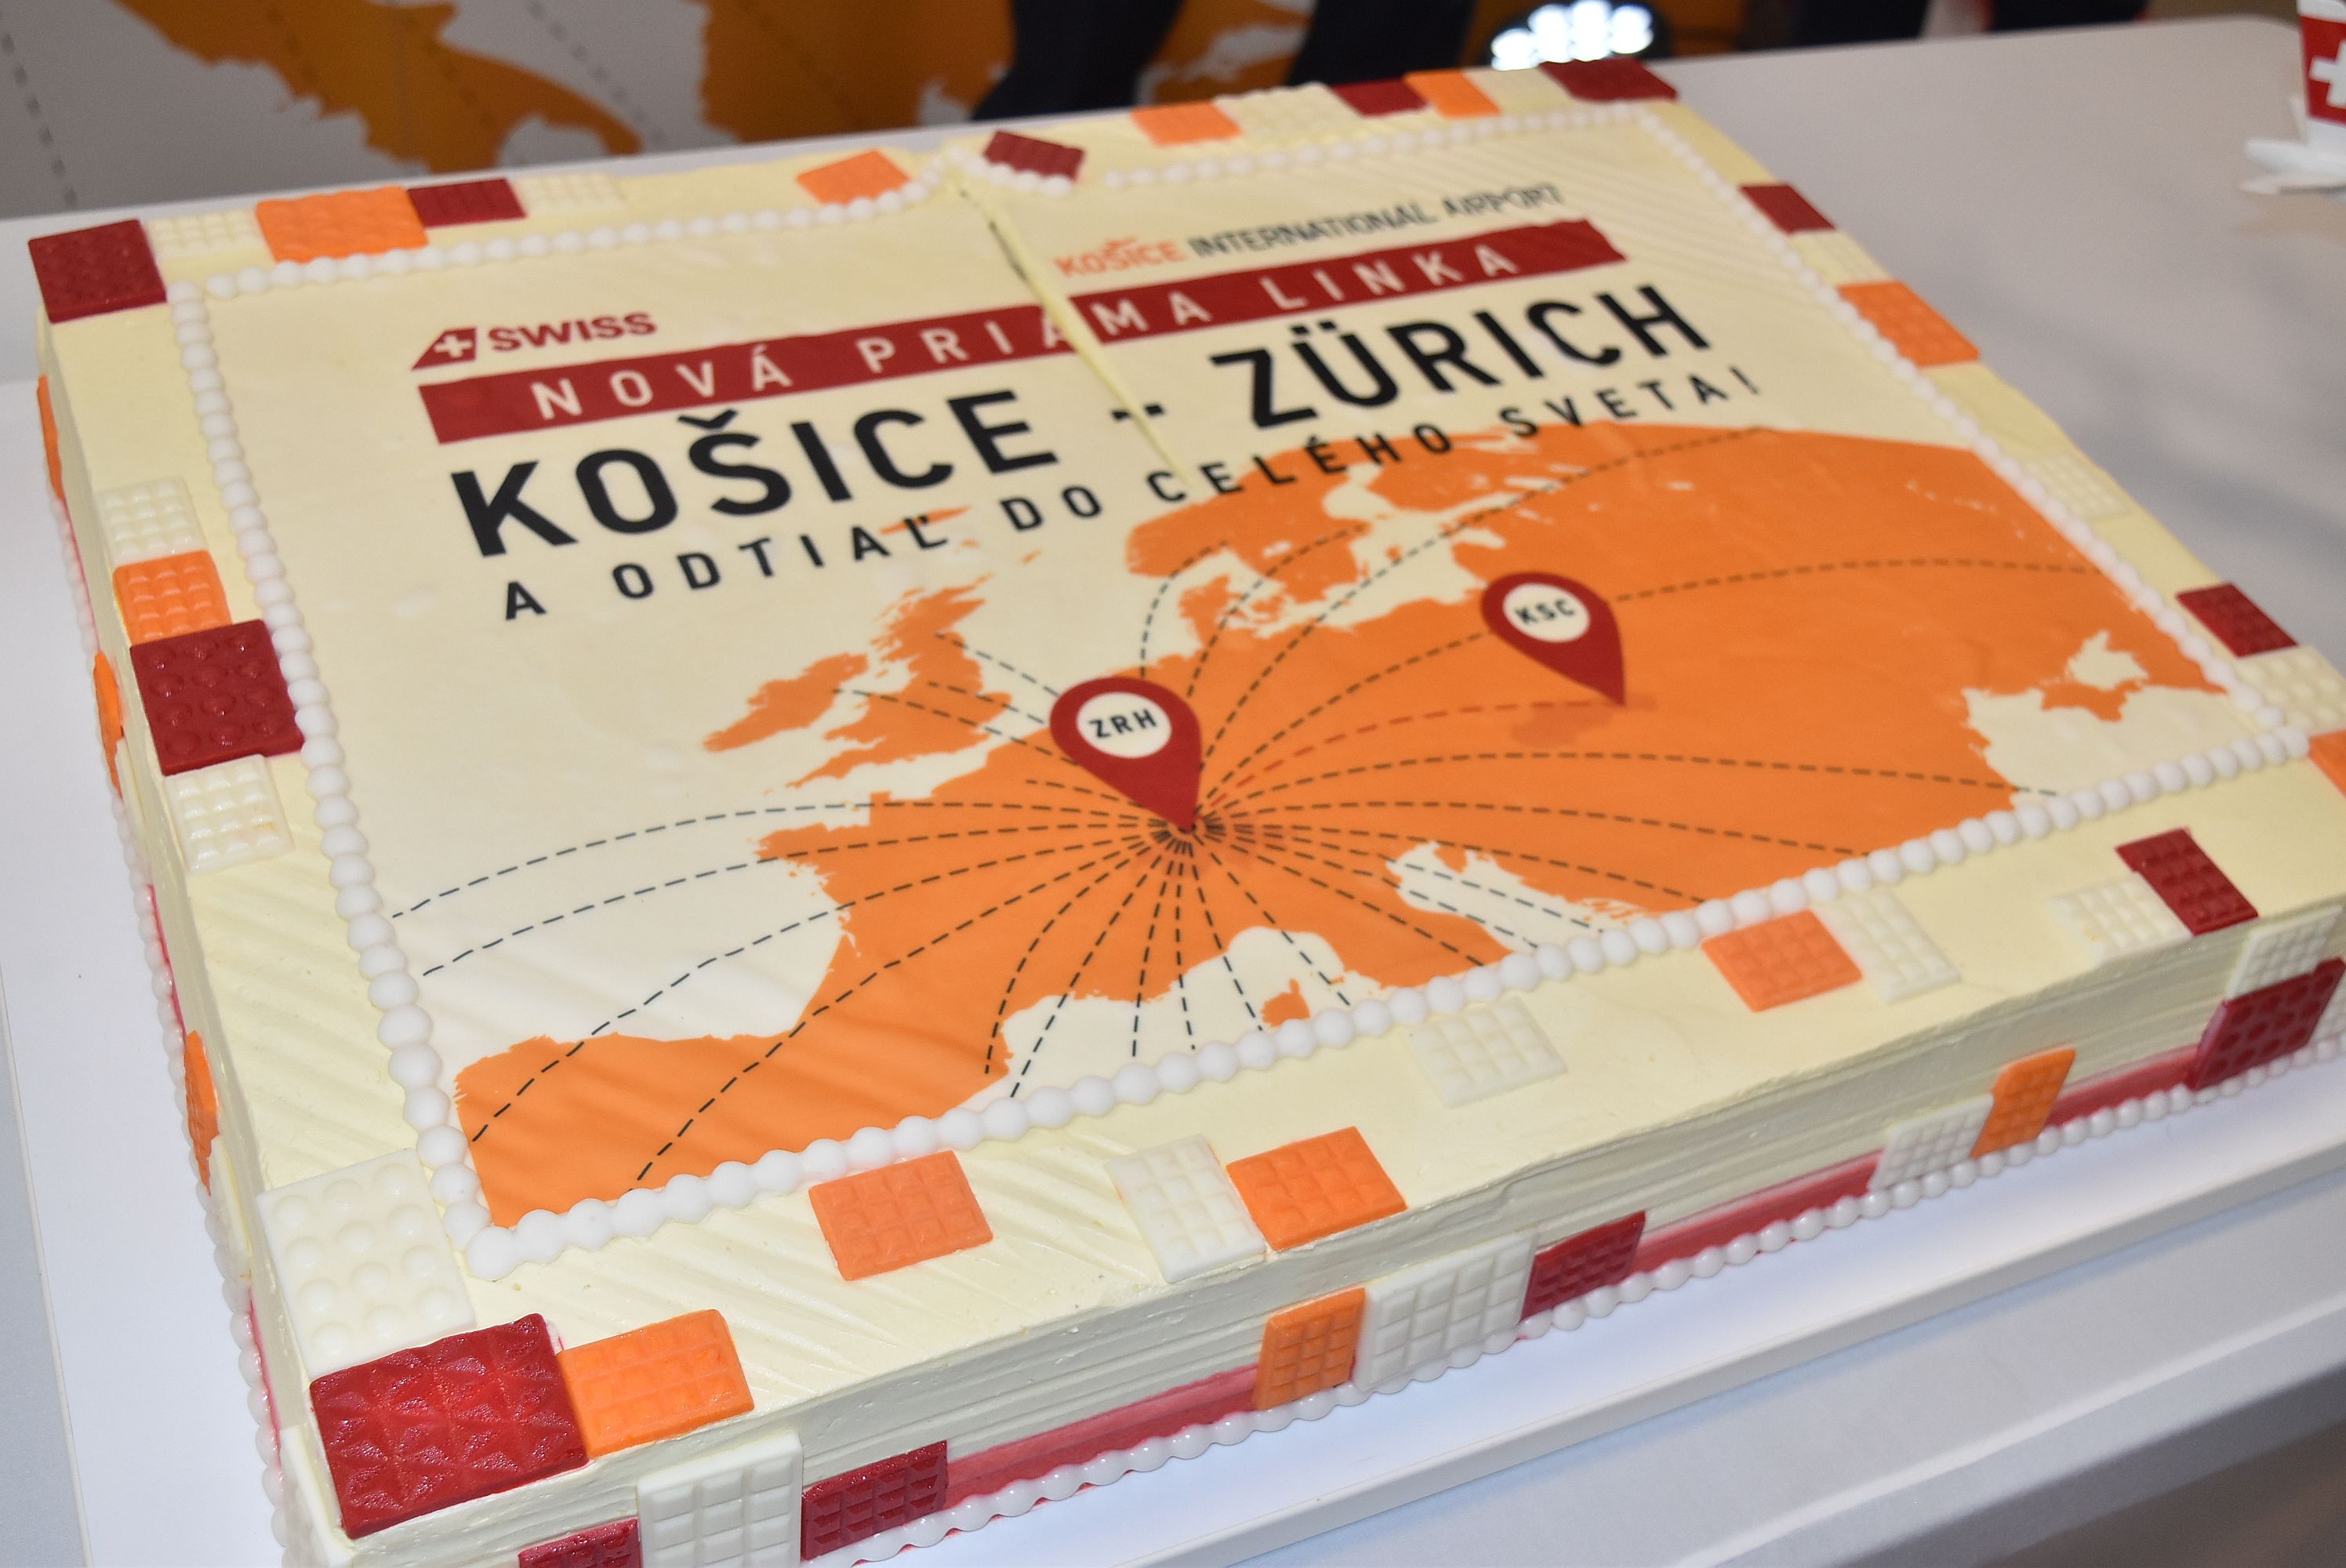 Nová linka Košice - Zurich